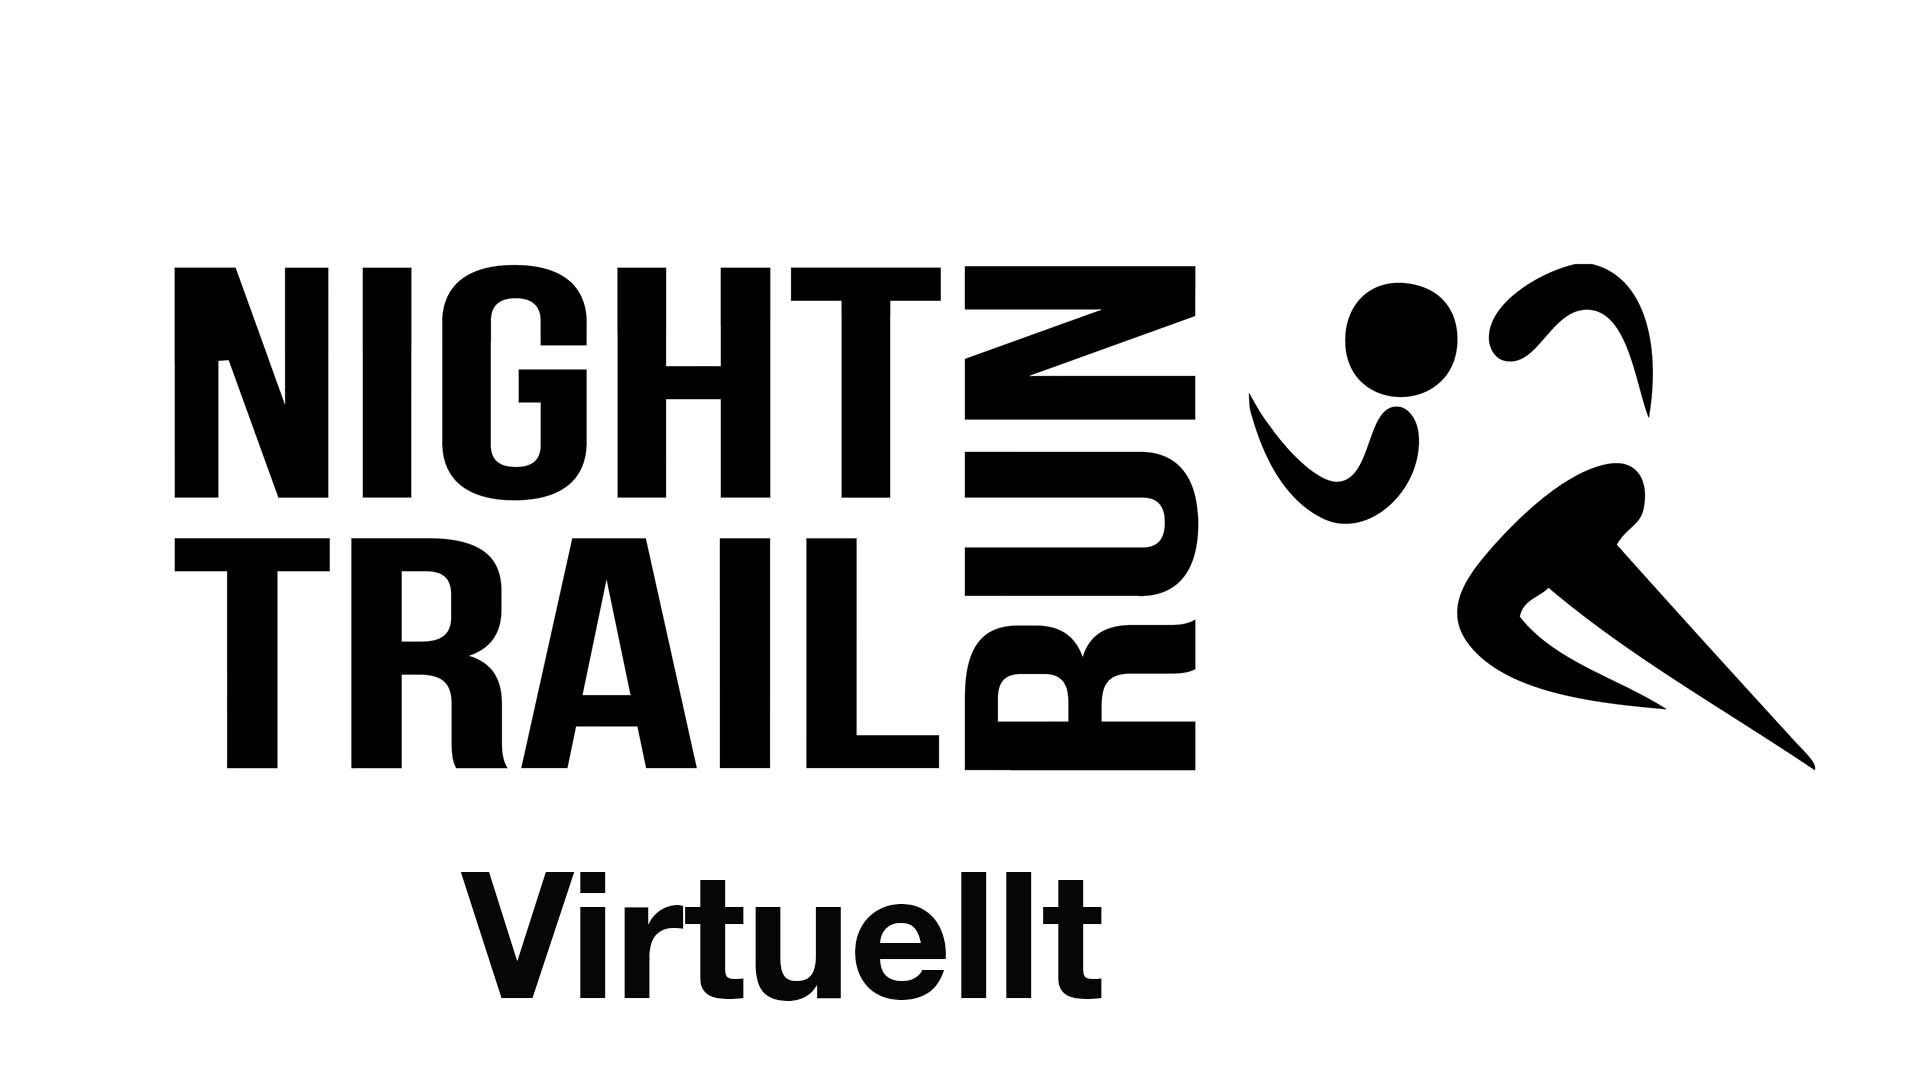 Night Trail Run - Virtuellt 5 km